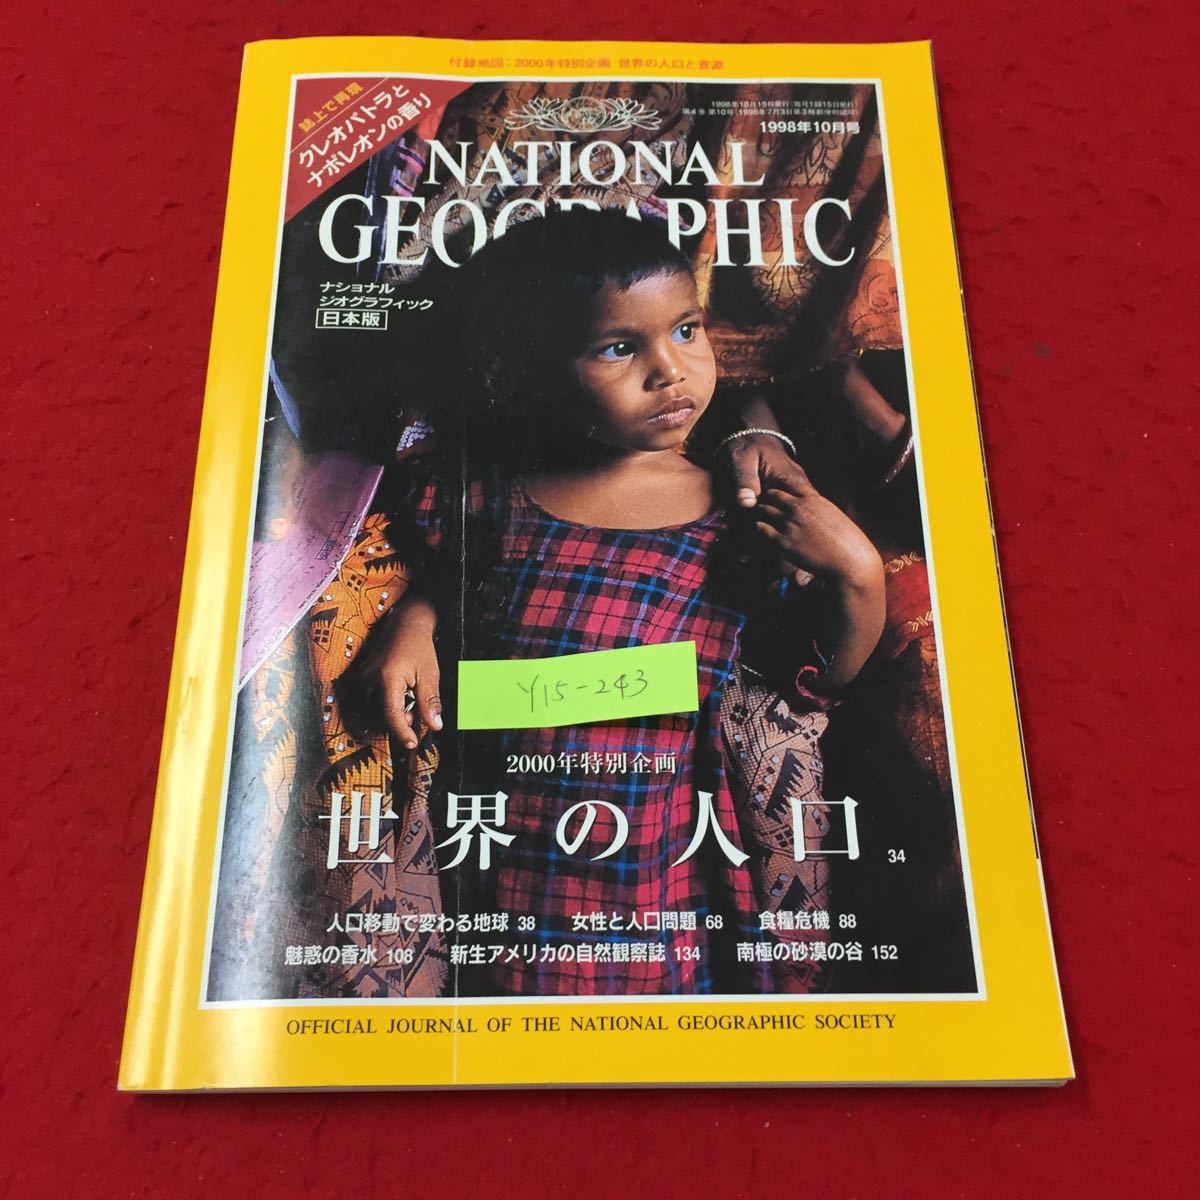 1998 10ナショナル ジオグラフィック日本版 世界の人口